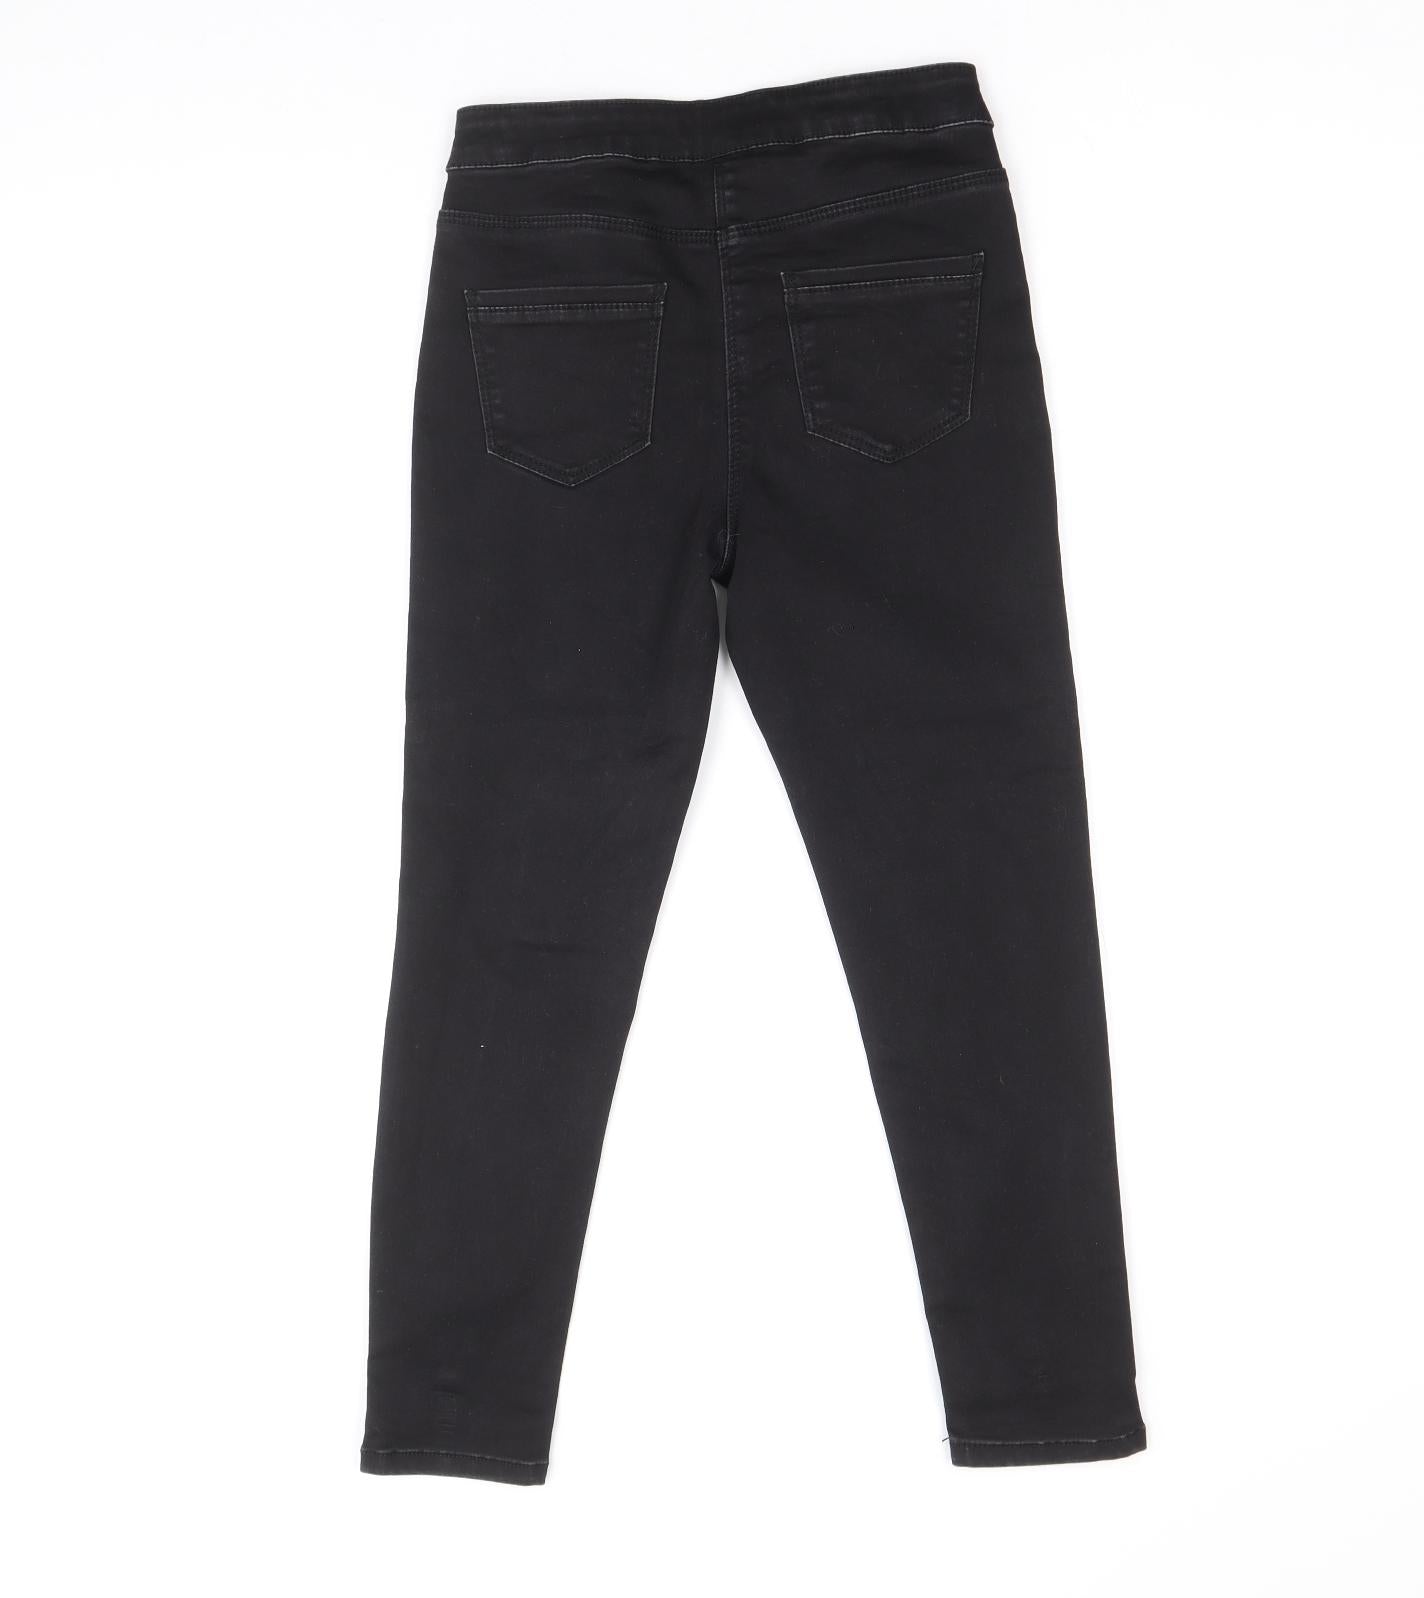 Matalan Girls Black Cotton Skinny Jeans Size 9 Years Regular Zip